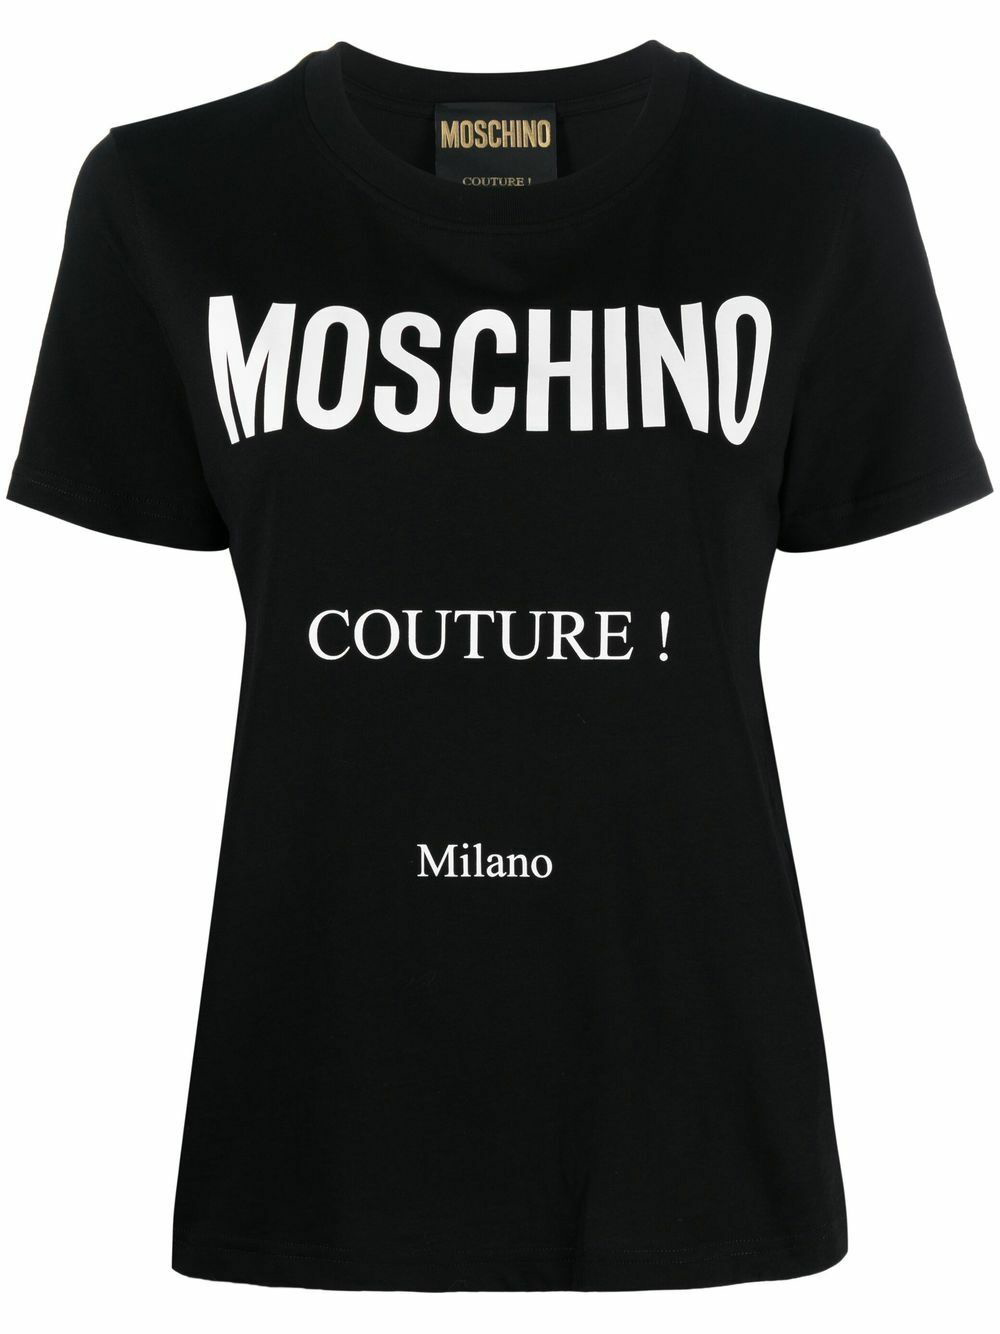 Moschino T Shirt Black Womens Moschino